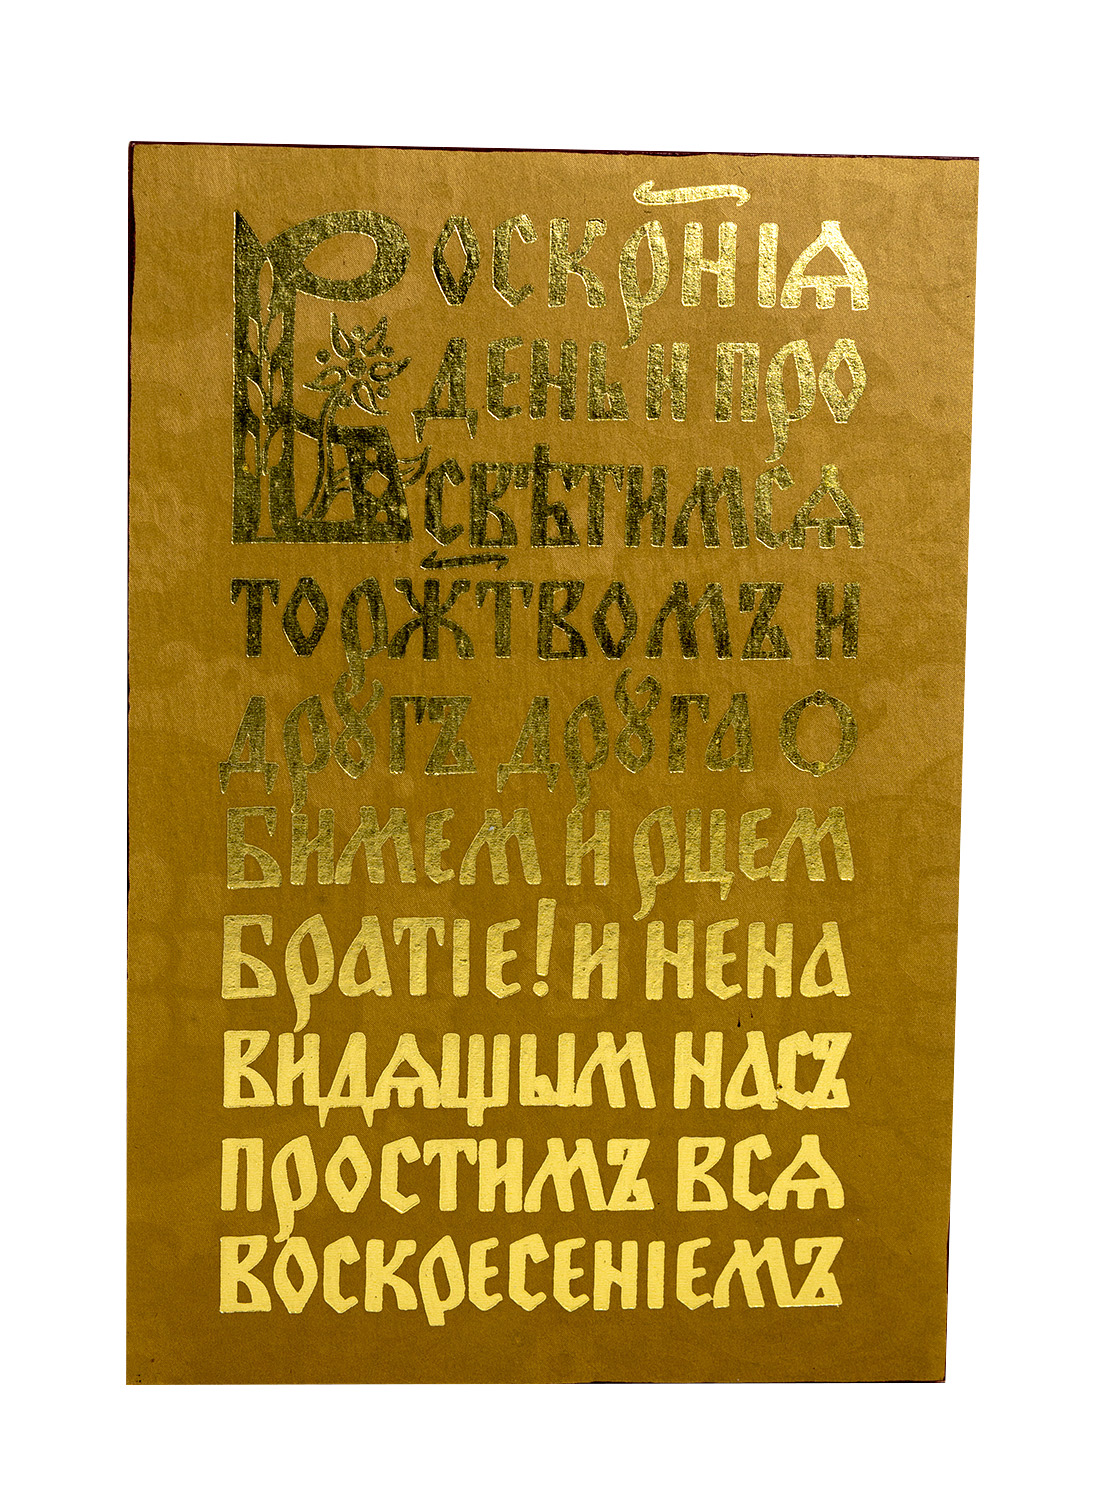 Mikuláš Klimčák - Modlitba 2000 (písmo - drevo 19x13)